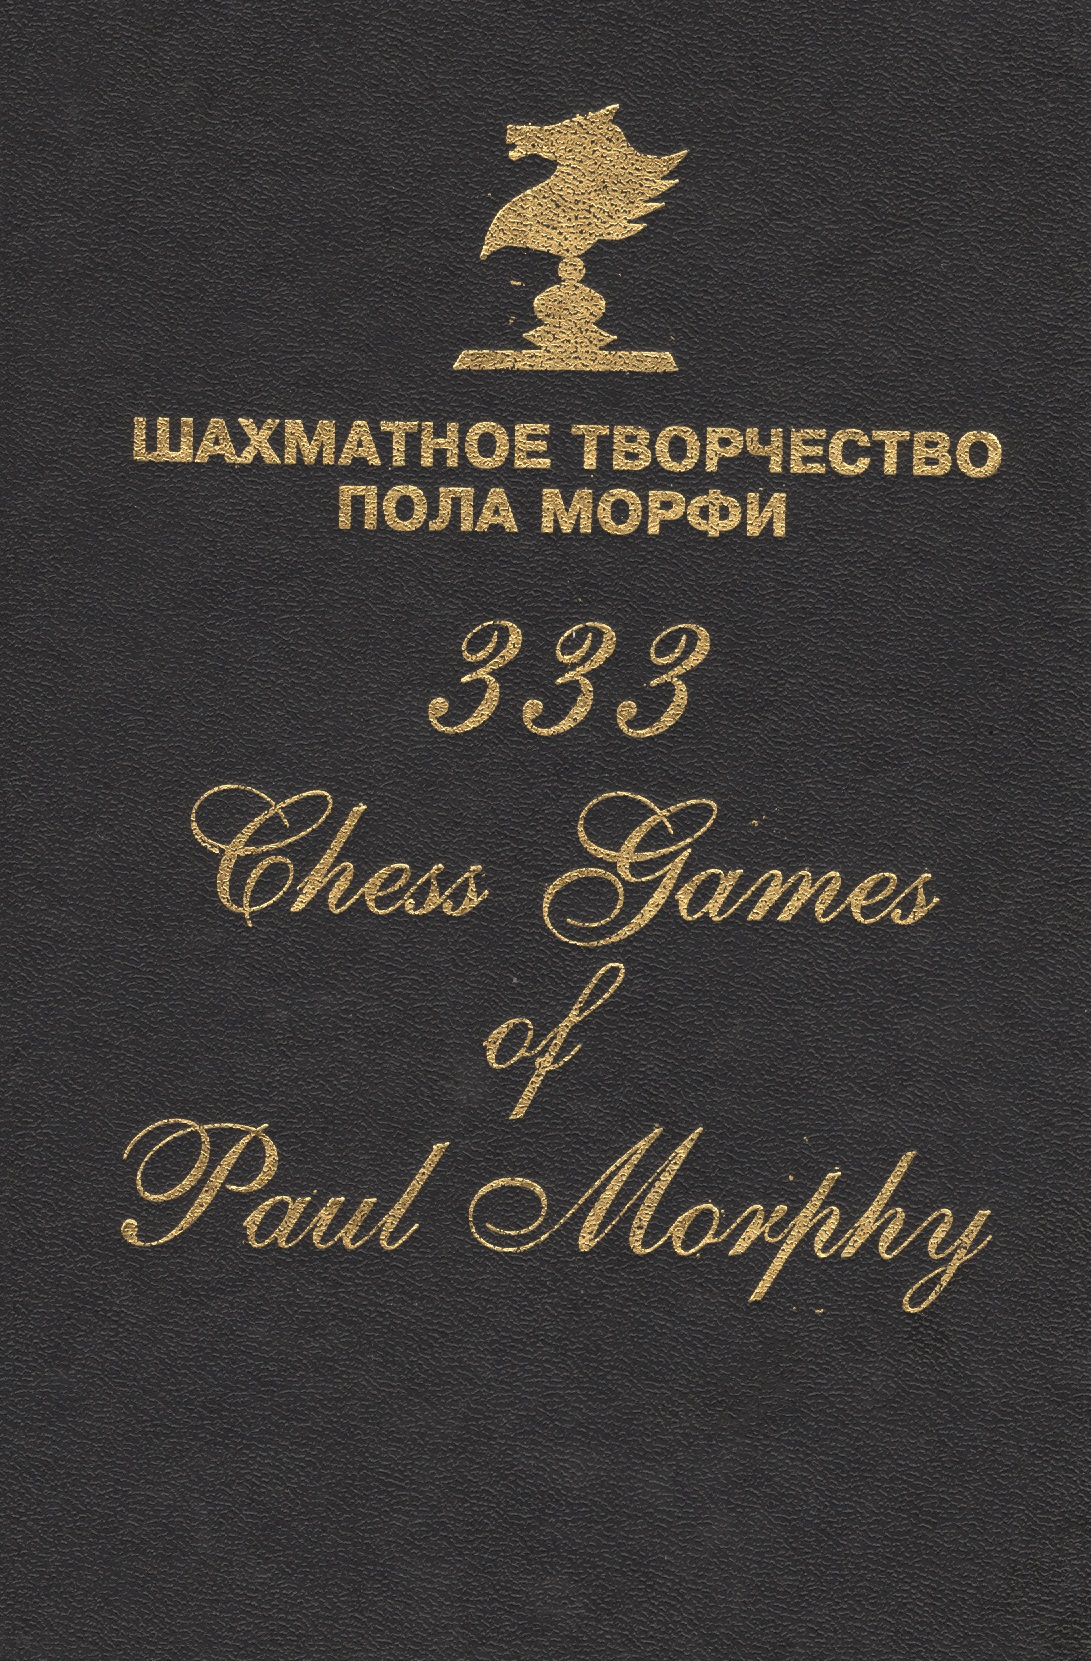 Шахматное творчество Пола Морфи 333 Chess games of Paul Morphy (Сафиуллин) мароци геза шахматная школа пола морфи